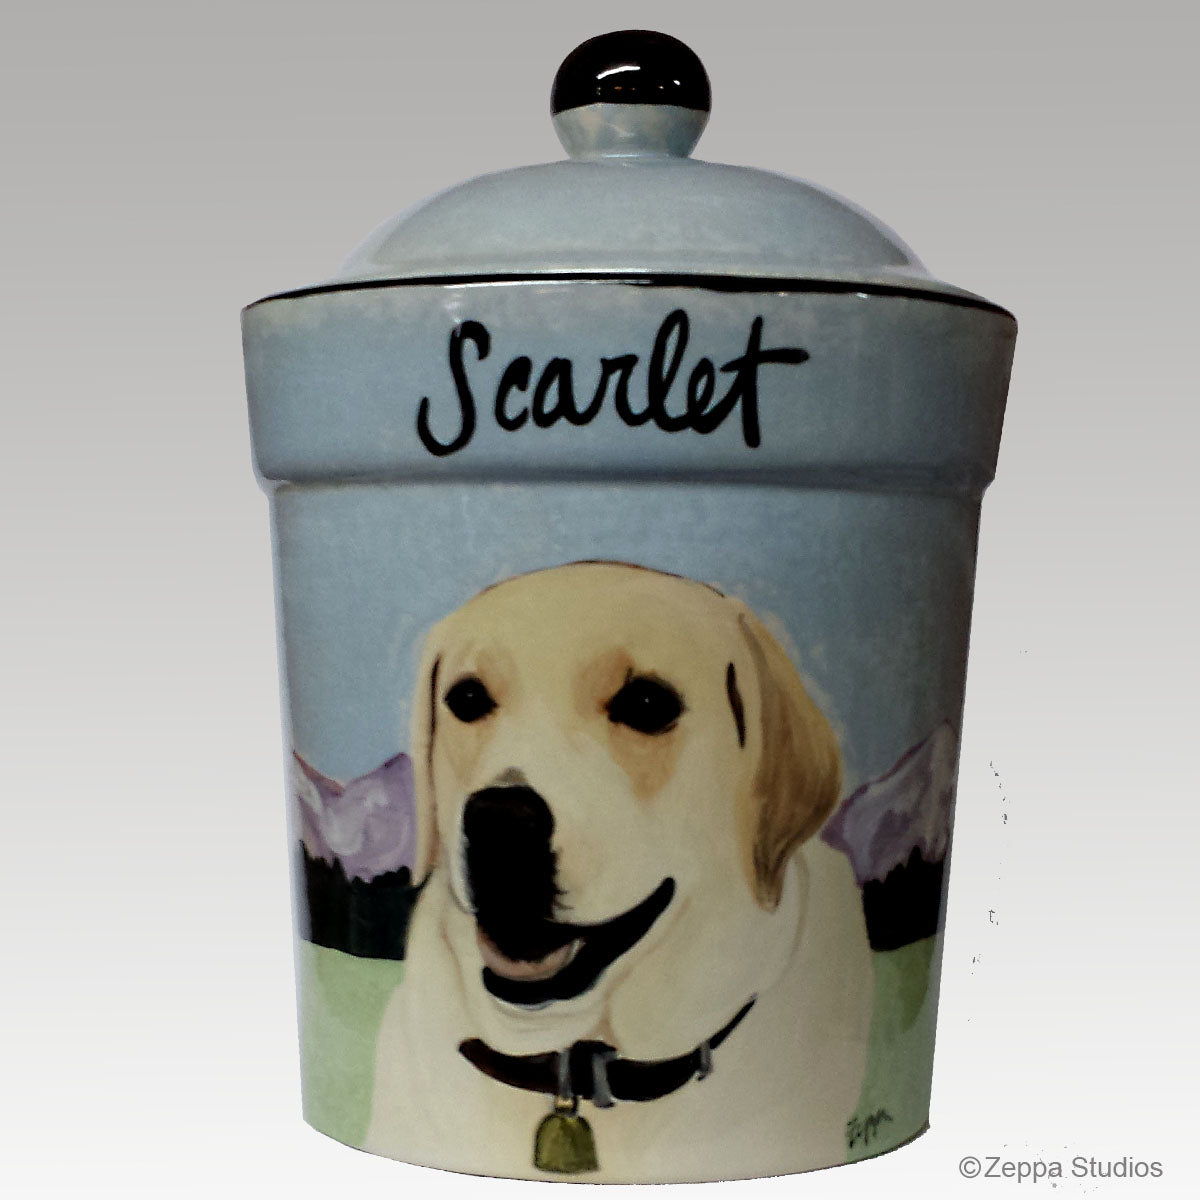 Custom Hand Painted Ceramic Treat Jar, "Scarlet" by Zeppa Studios